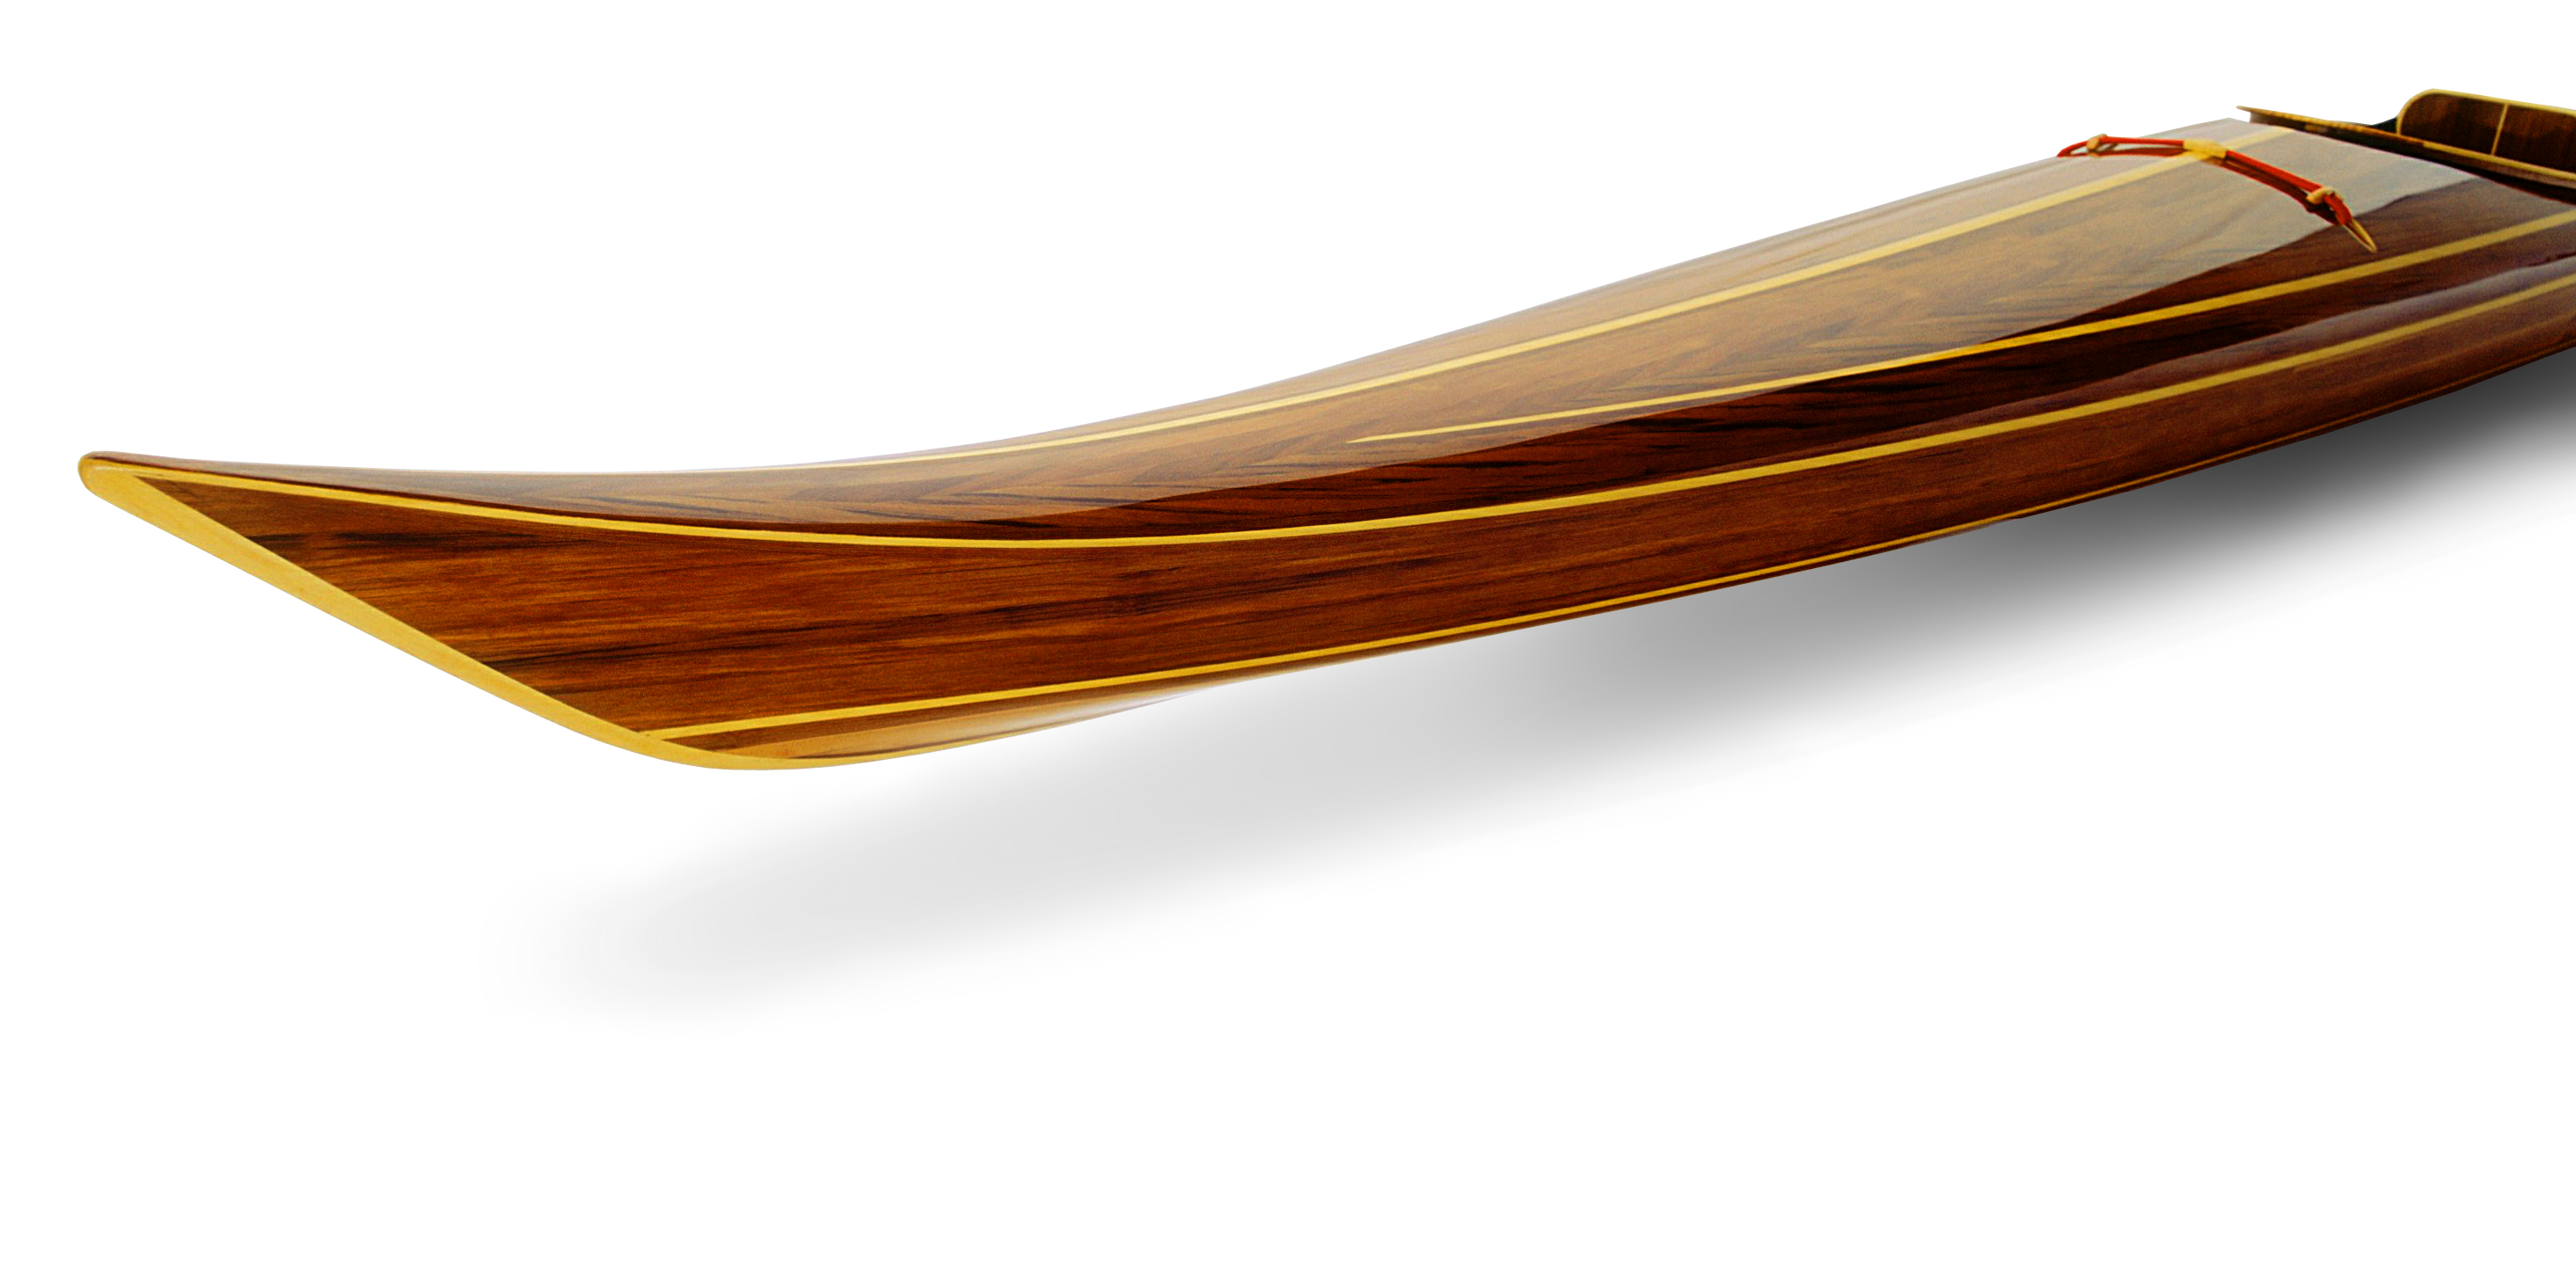 Custom Built Wooden Kayaks